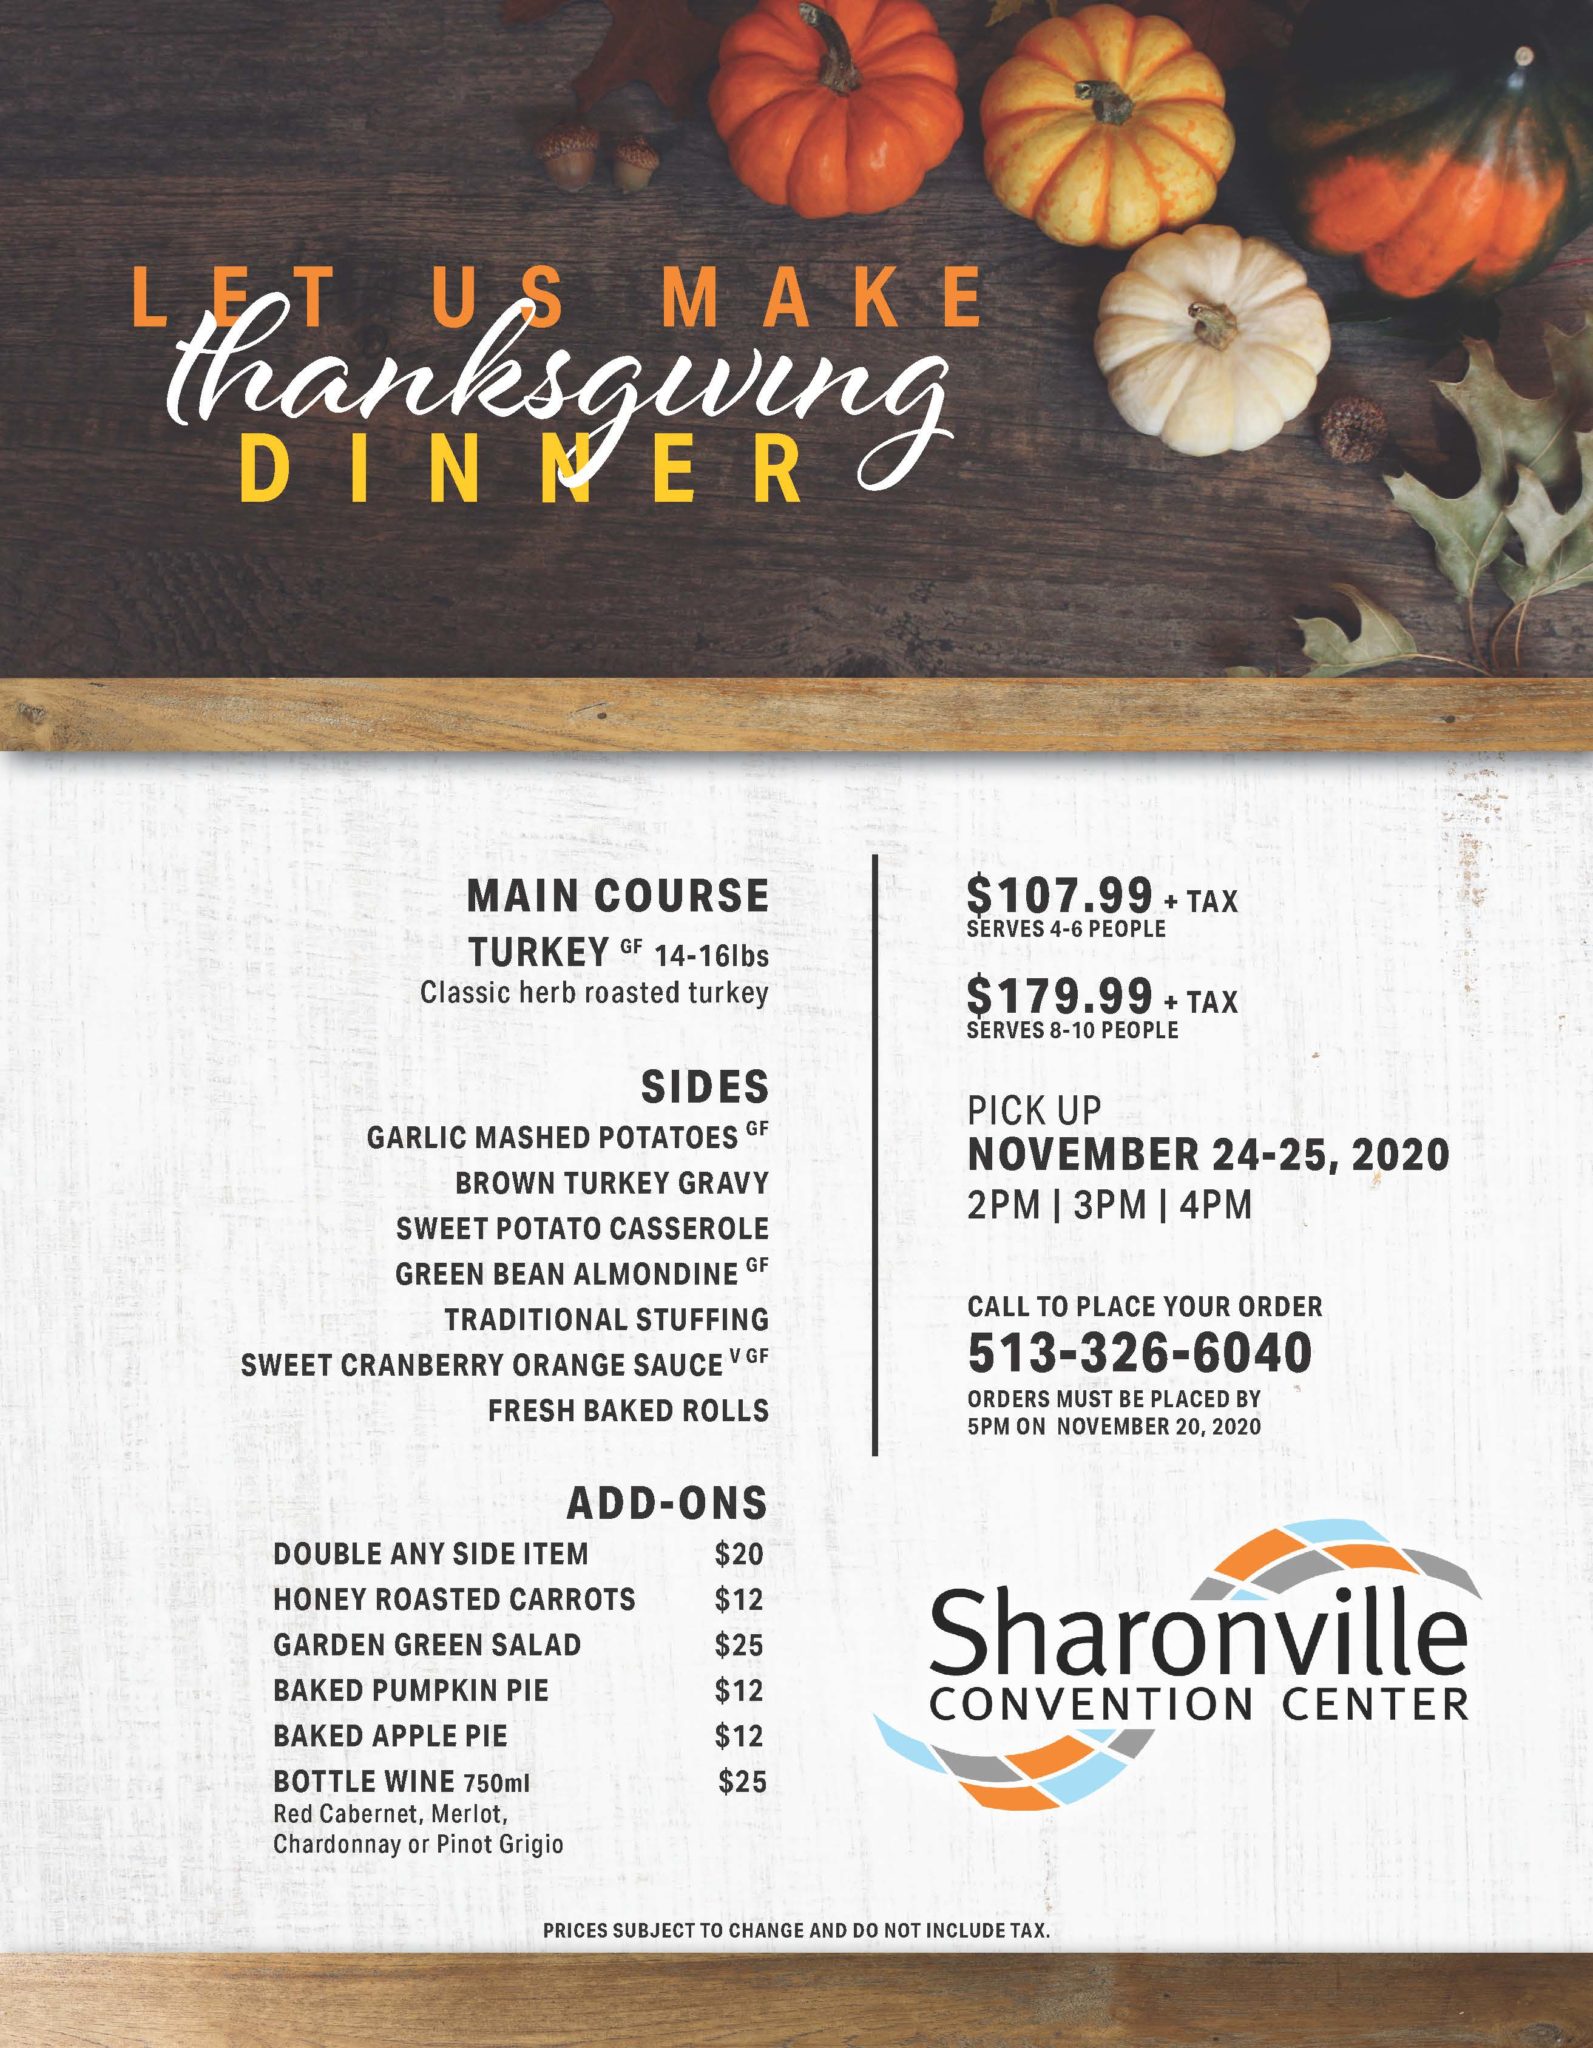 Thanksgiving Dinner Sharonville Convention Center Cincinnati, OH